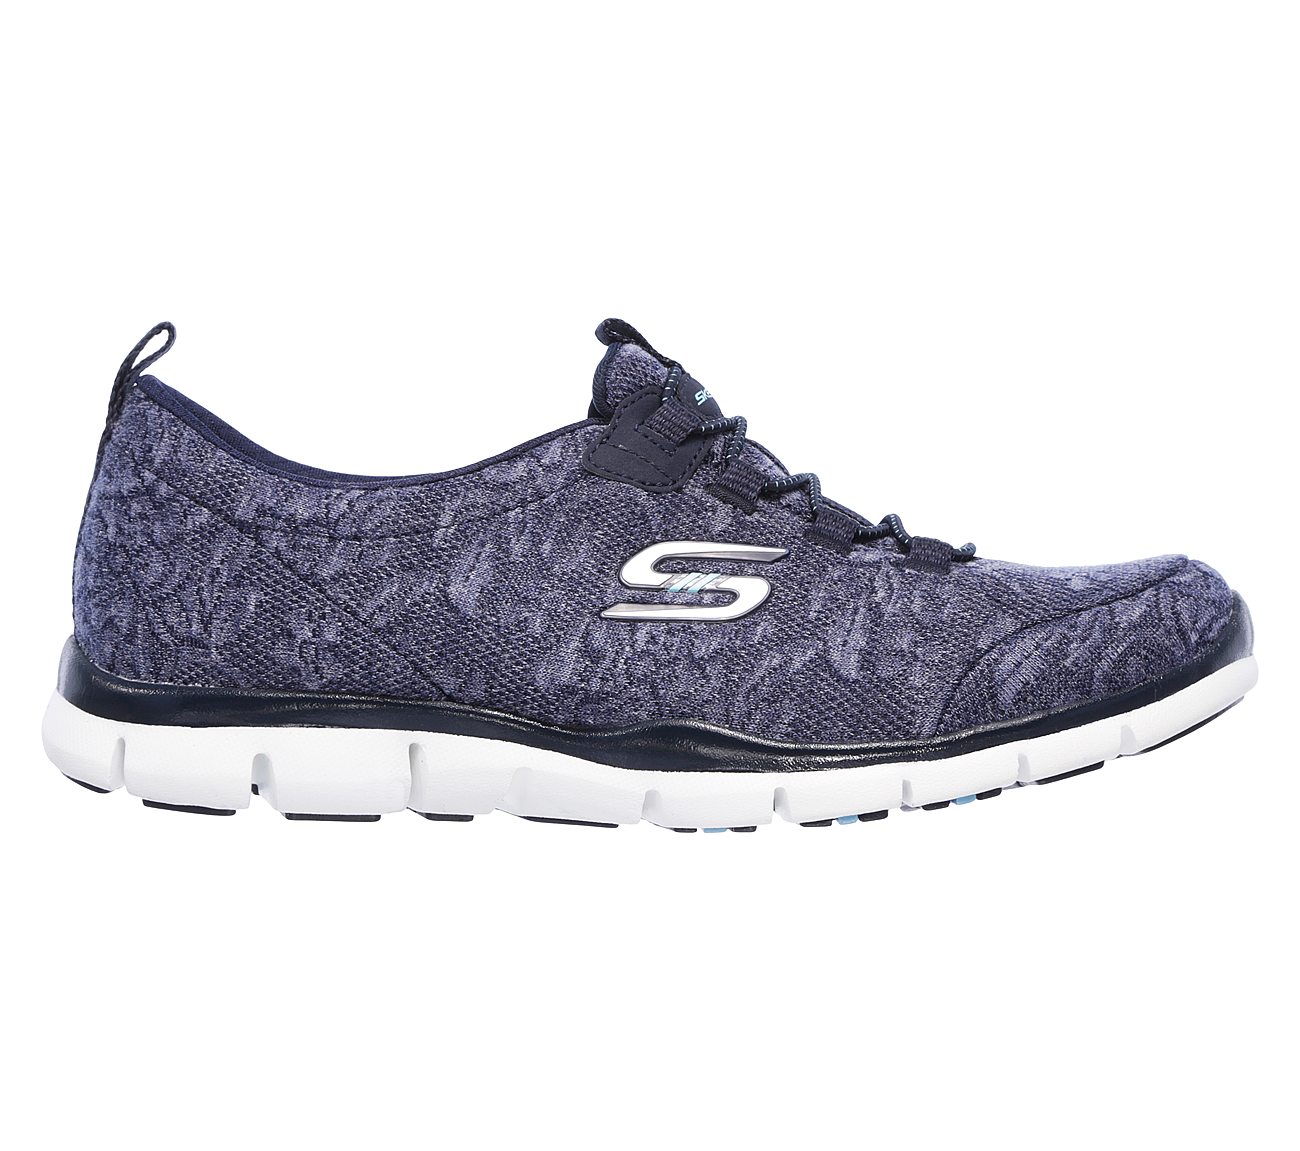 Παπούτσια Skechers. Επίσημο e-shop Skechers.gr (GR)